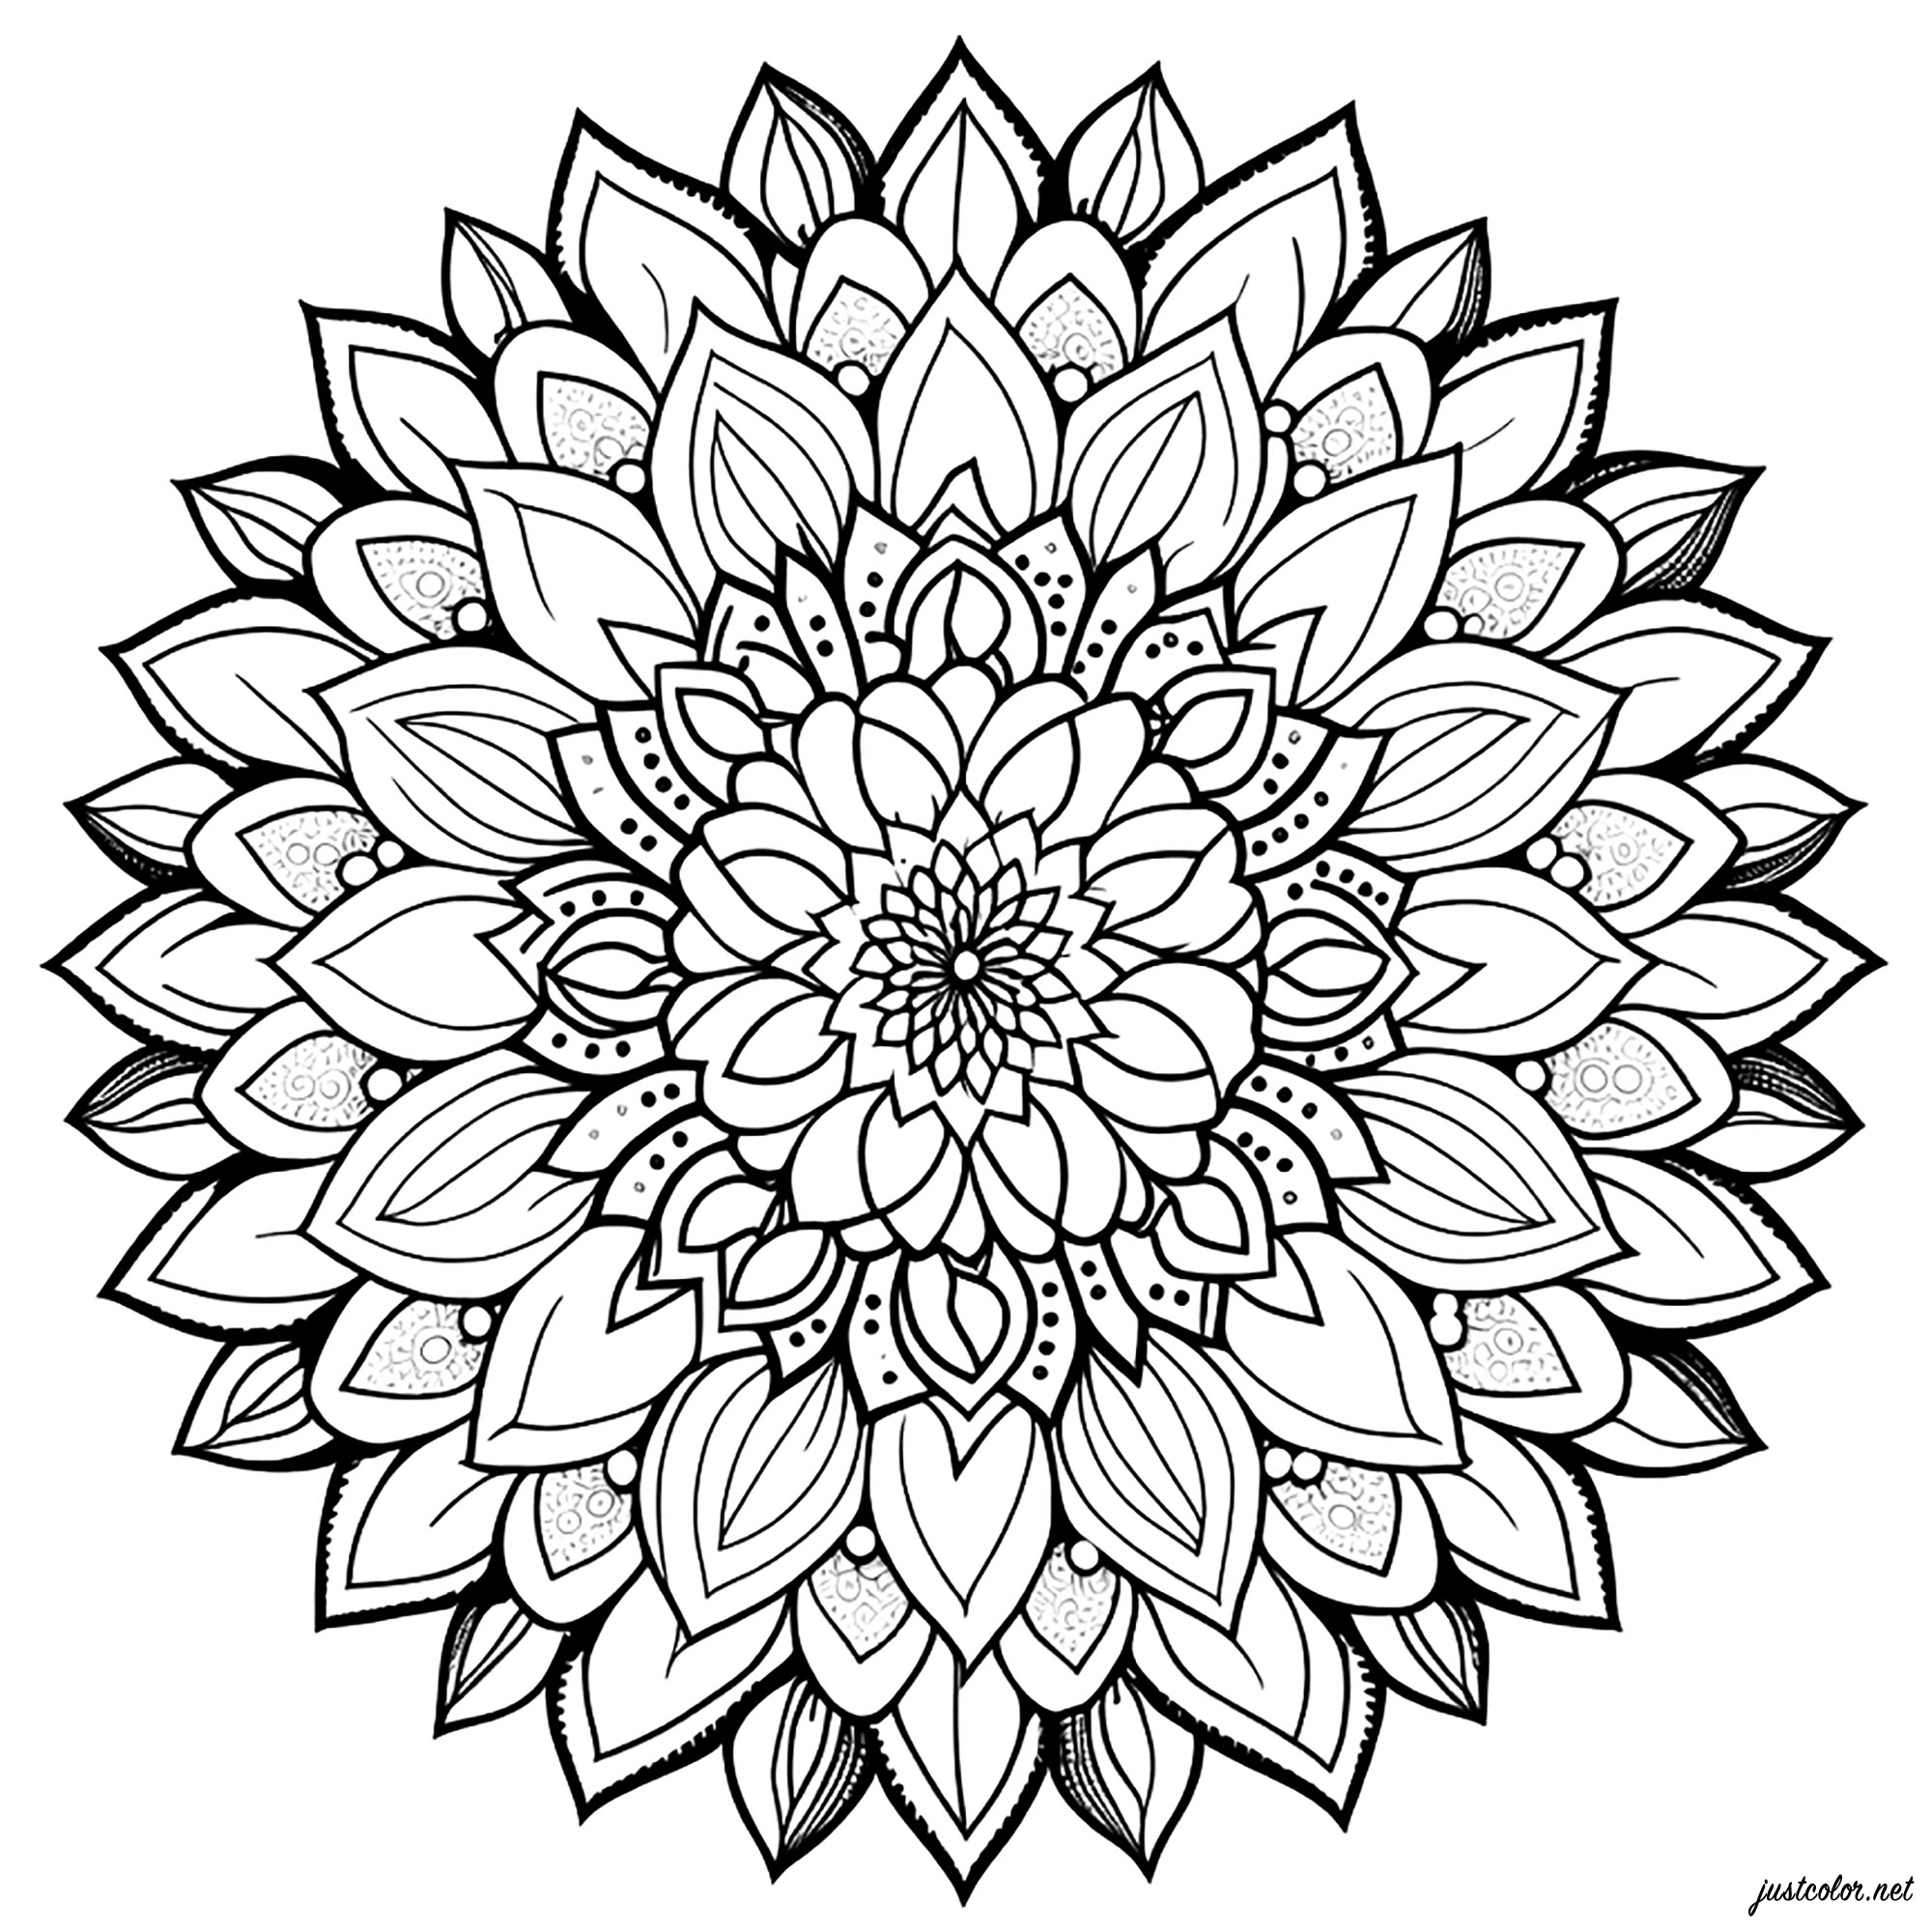 Mandala sencillo con pétalos. Esta sencilla página para colorear de mandala de pétalos es muy bonita y fácil de hacer. Se compone de flores y pétalos de flores que encajan perfectamente entre sí.